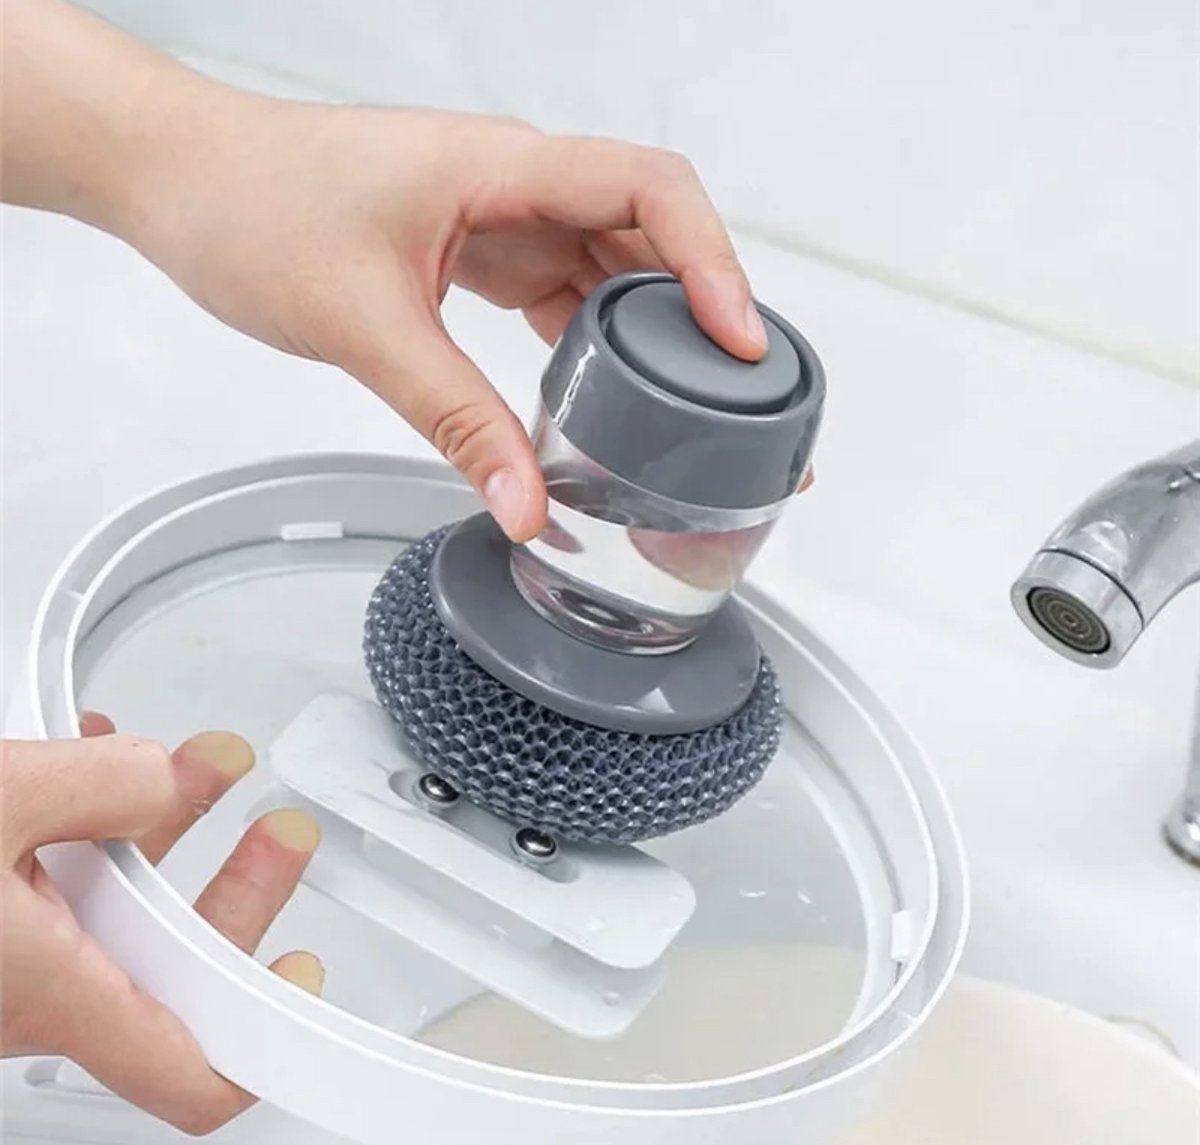 Schoonmaak spons met zeepdispenser - schoonmaak tool zeeptank - unieke schoonmaak tool - IXEN